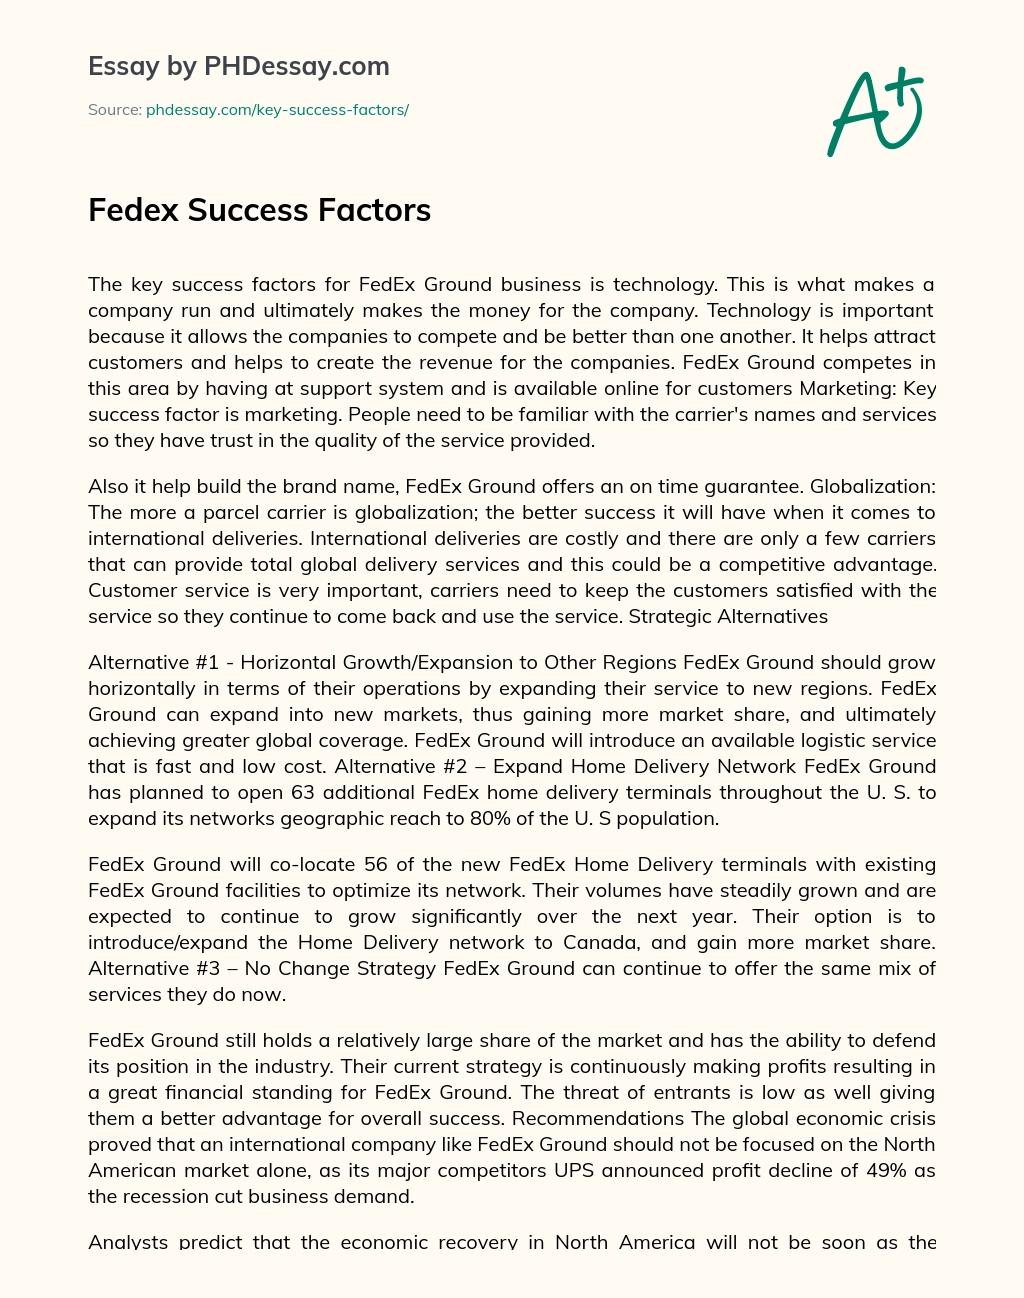 Fedex Success Factors essay